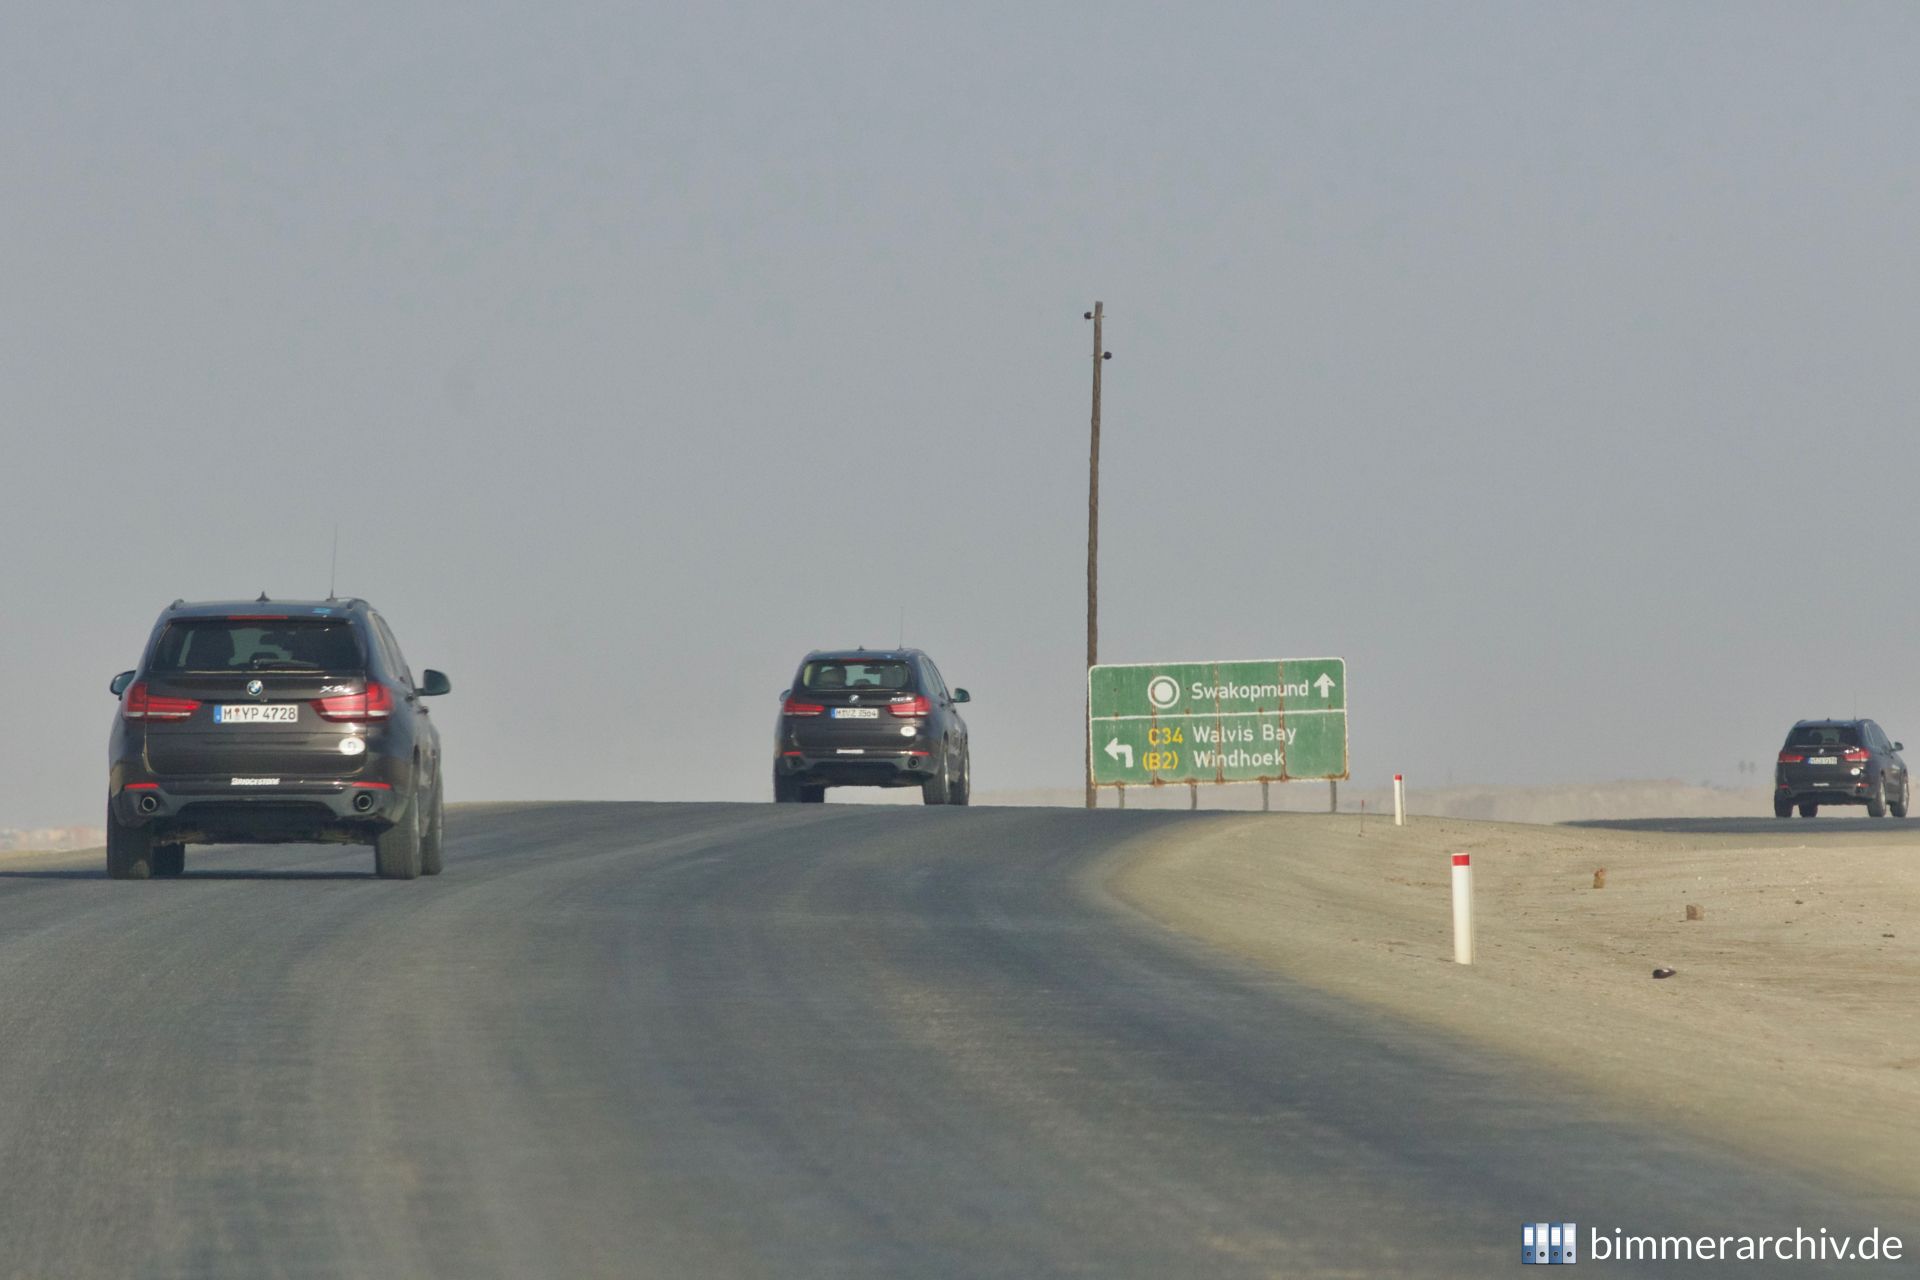 Salt Road to Swakopmund